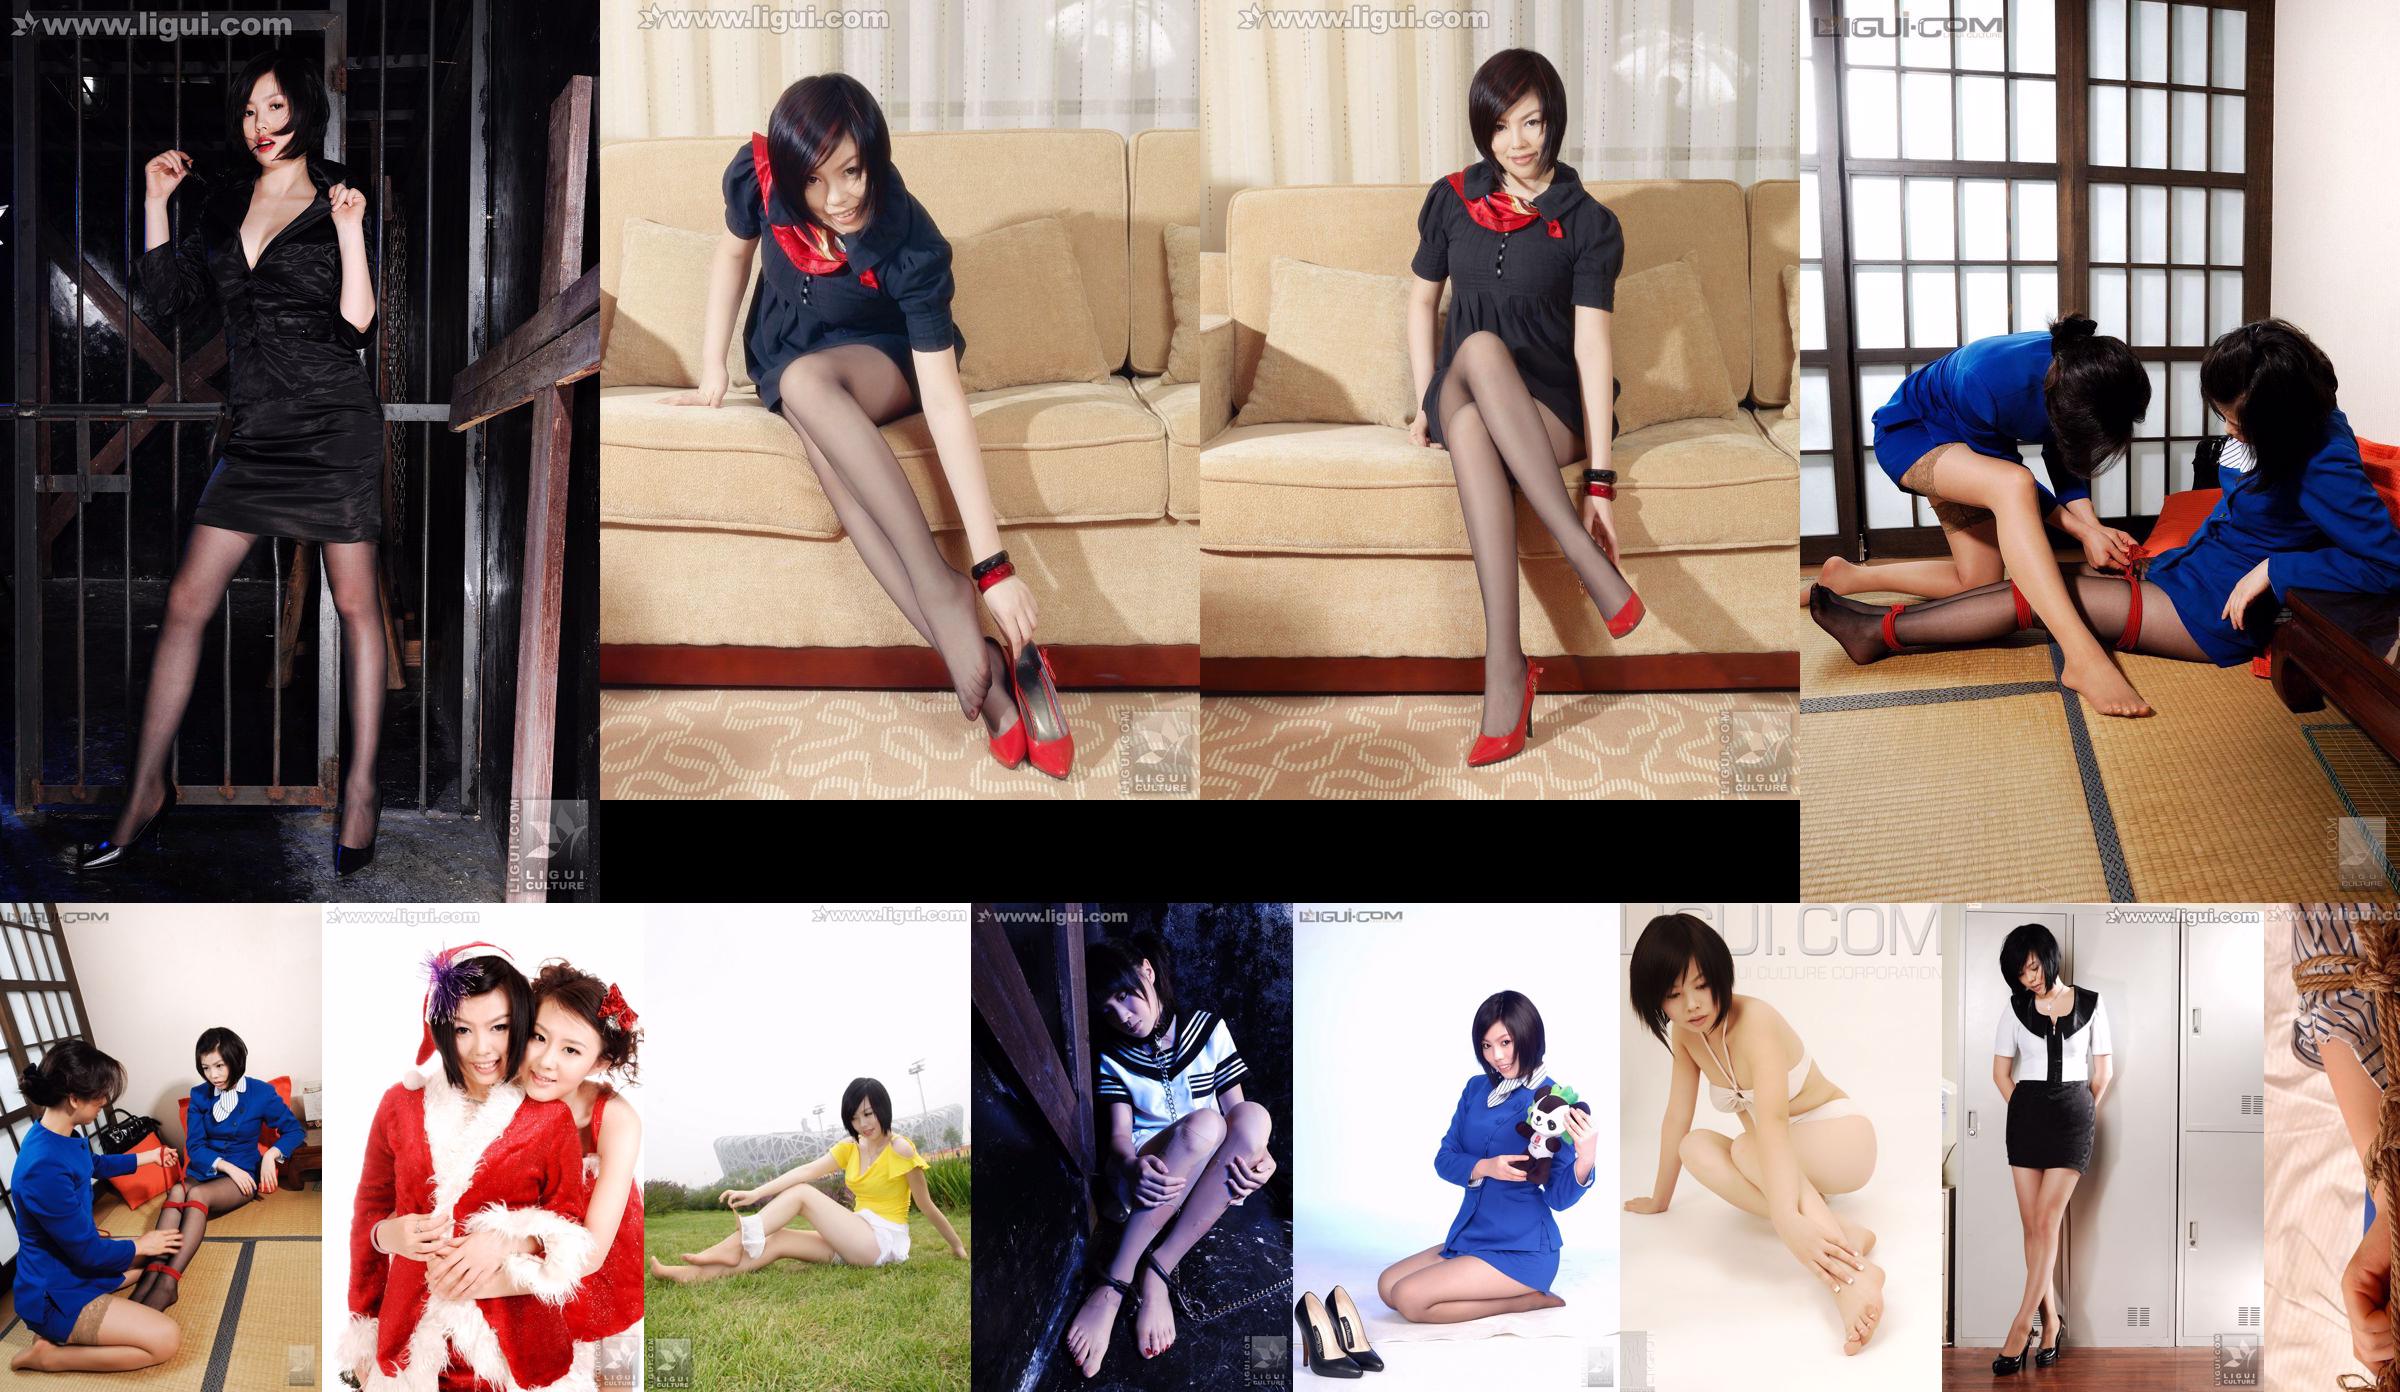 Модель "Cute Pajama Foot Show" [Ligui LiGui] Чулки, ступни, фото Изображение No.7ef83a Страница 5